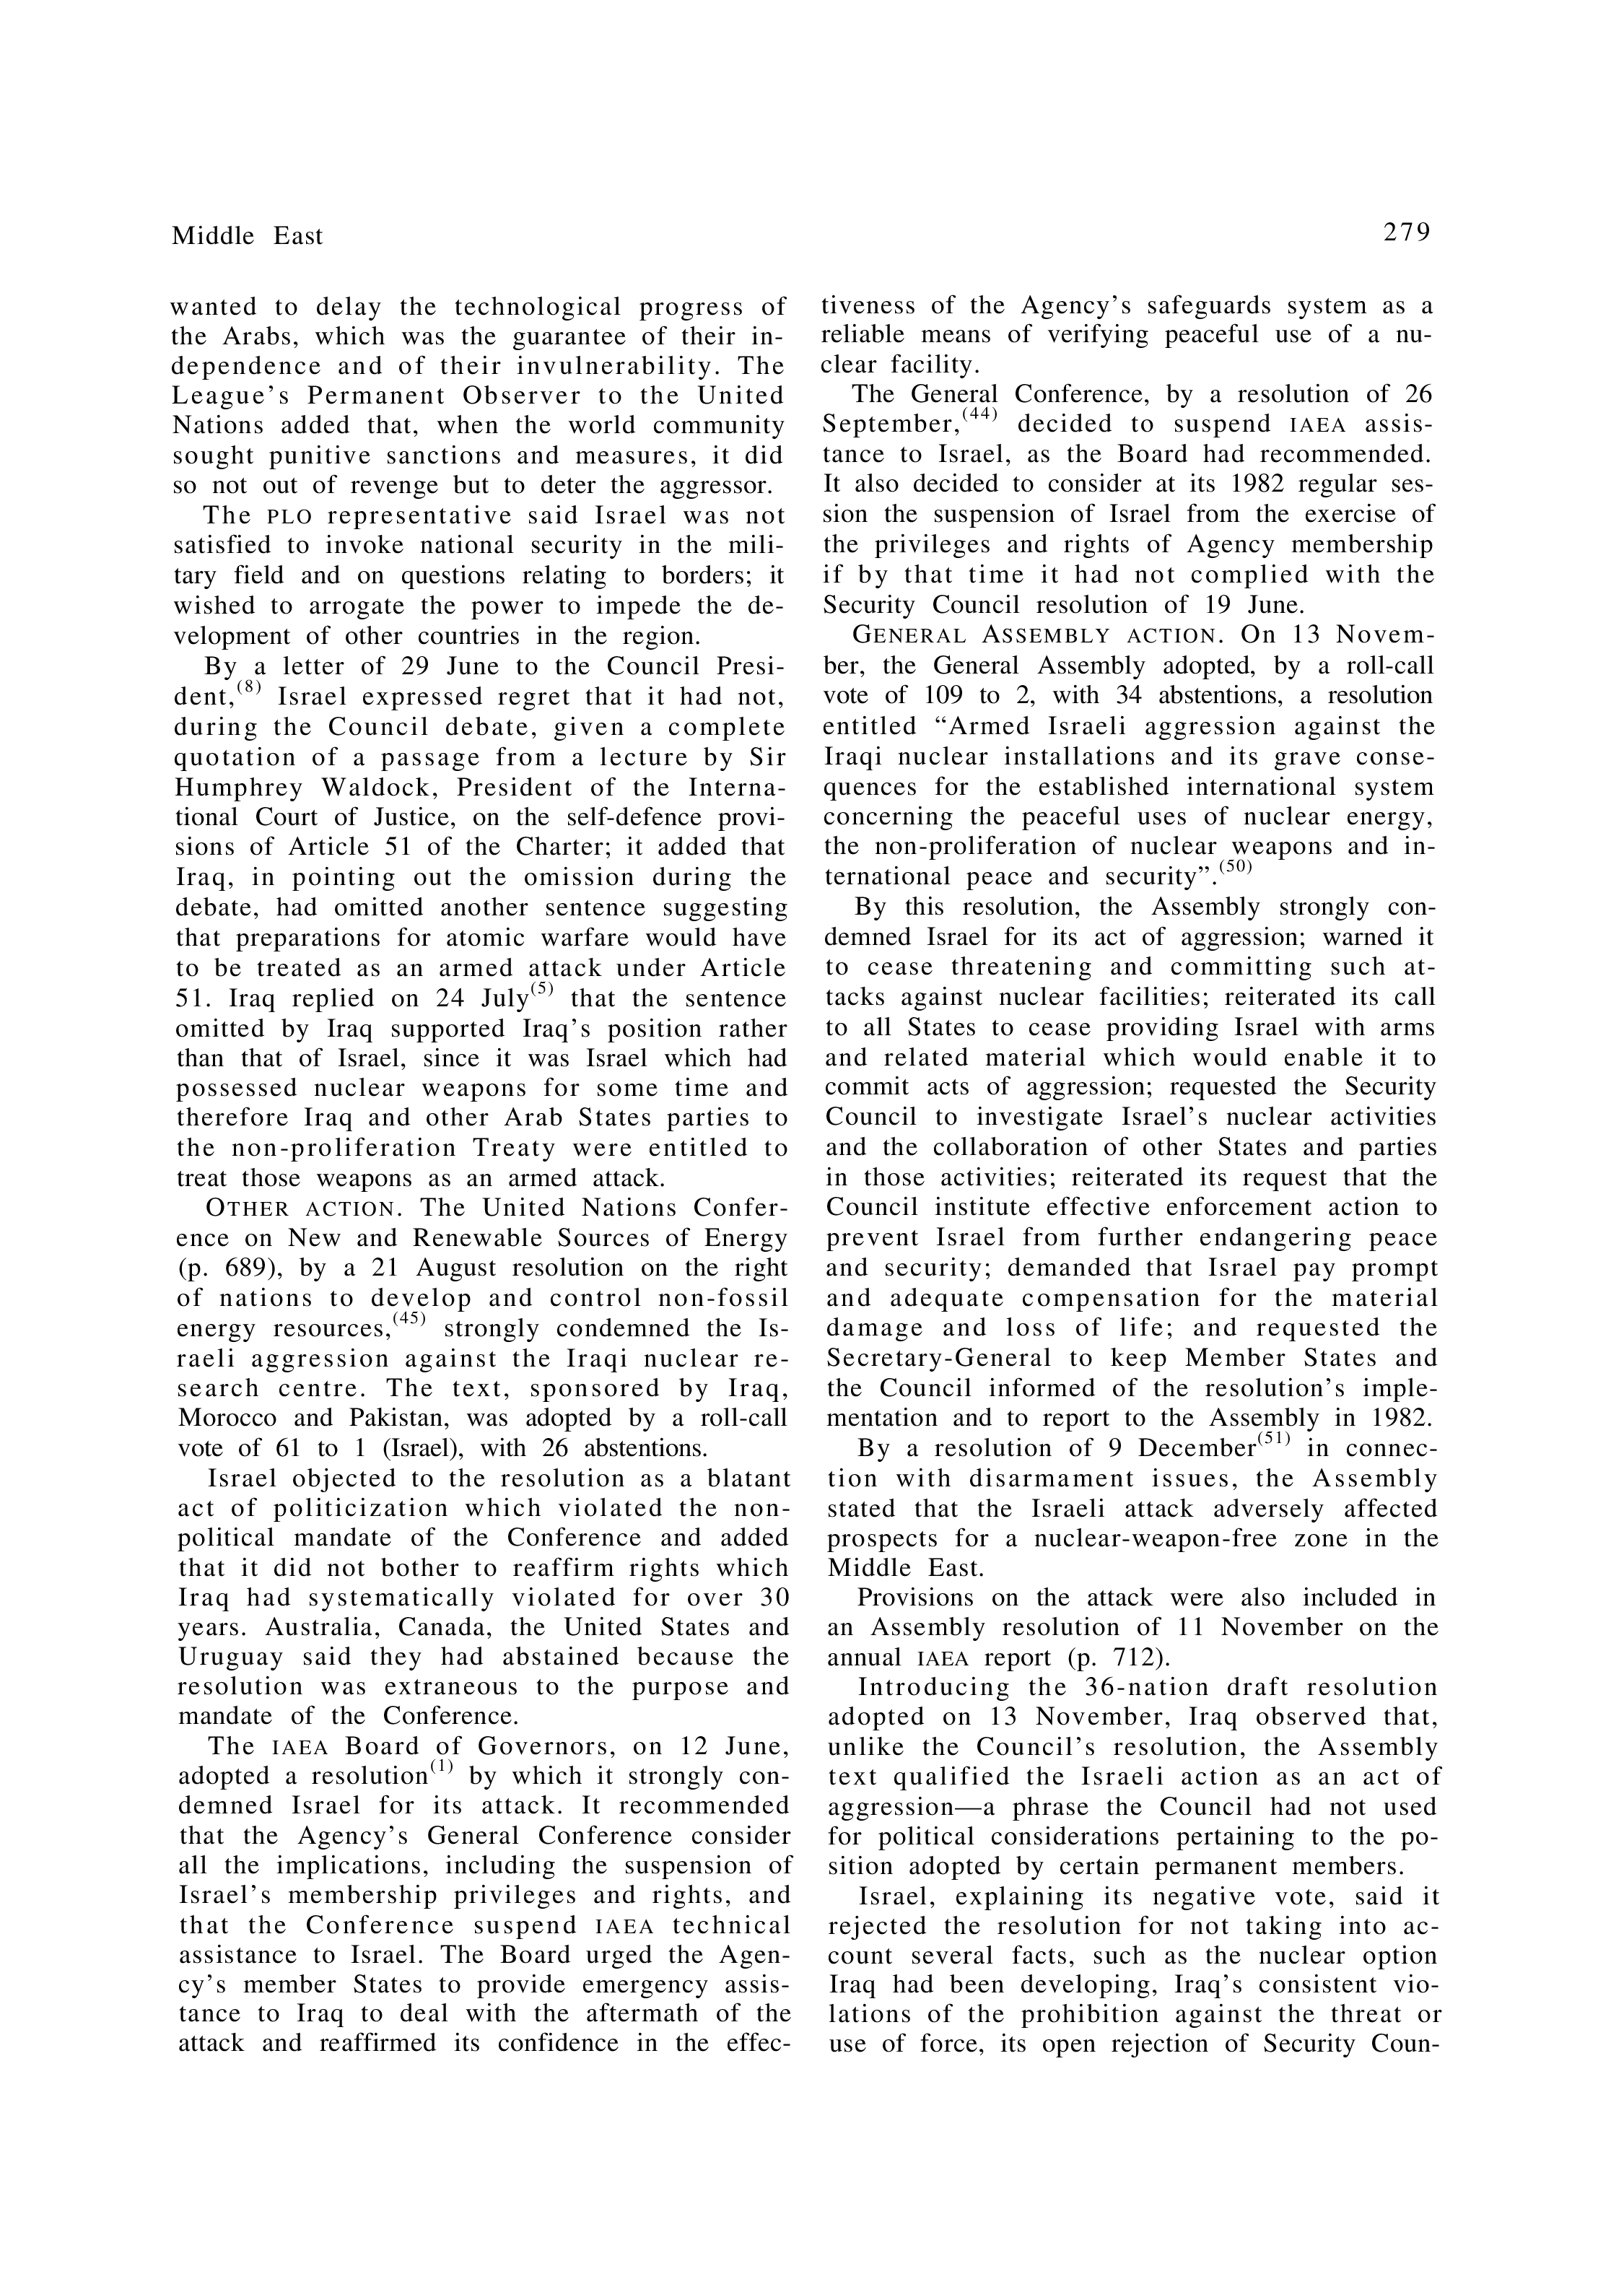 YUN Volume_Page 1981_291 excerpt